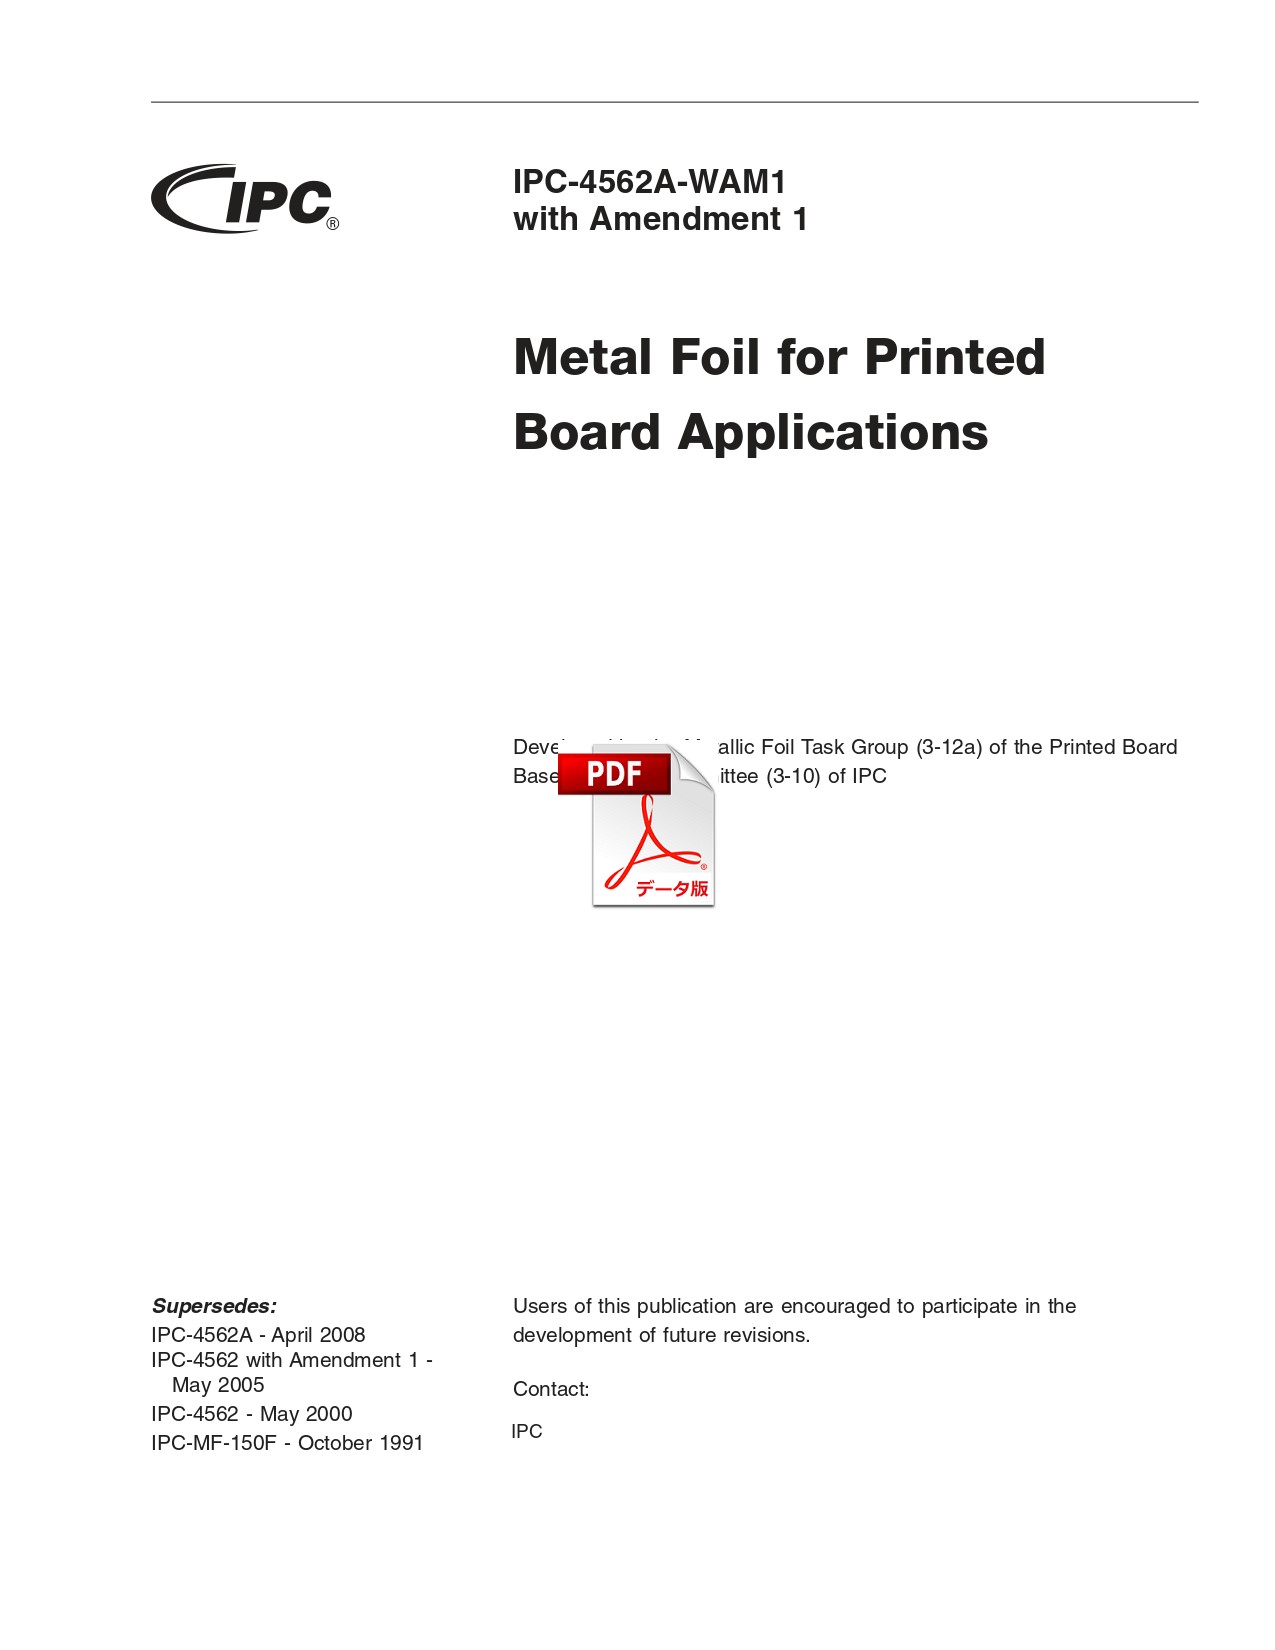 ［英語版］IPC-4562A-WAM1: Metal Foil for Printed Board Applications